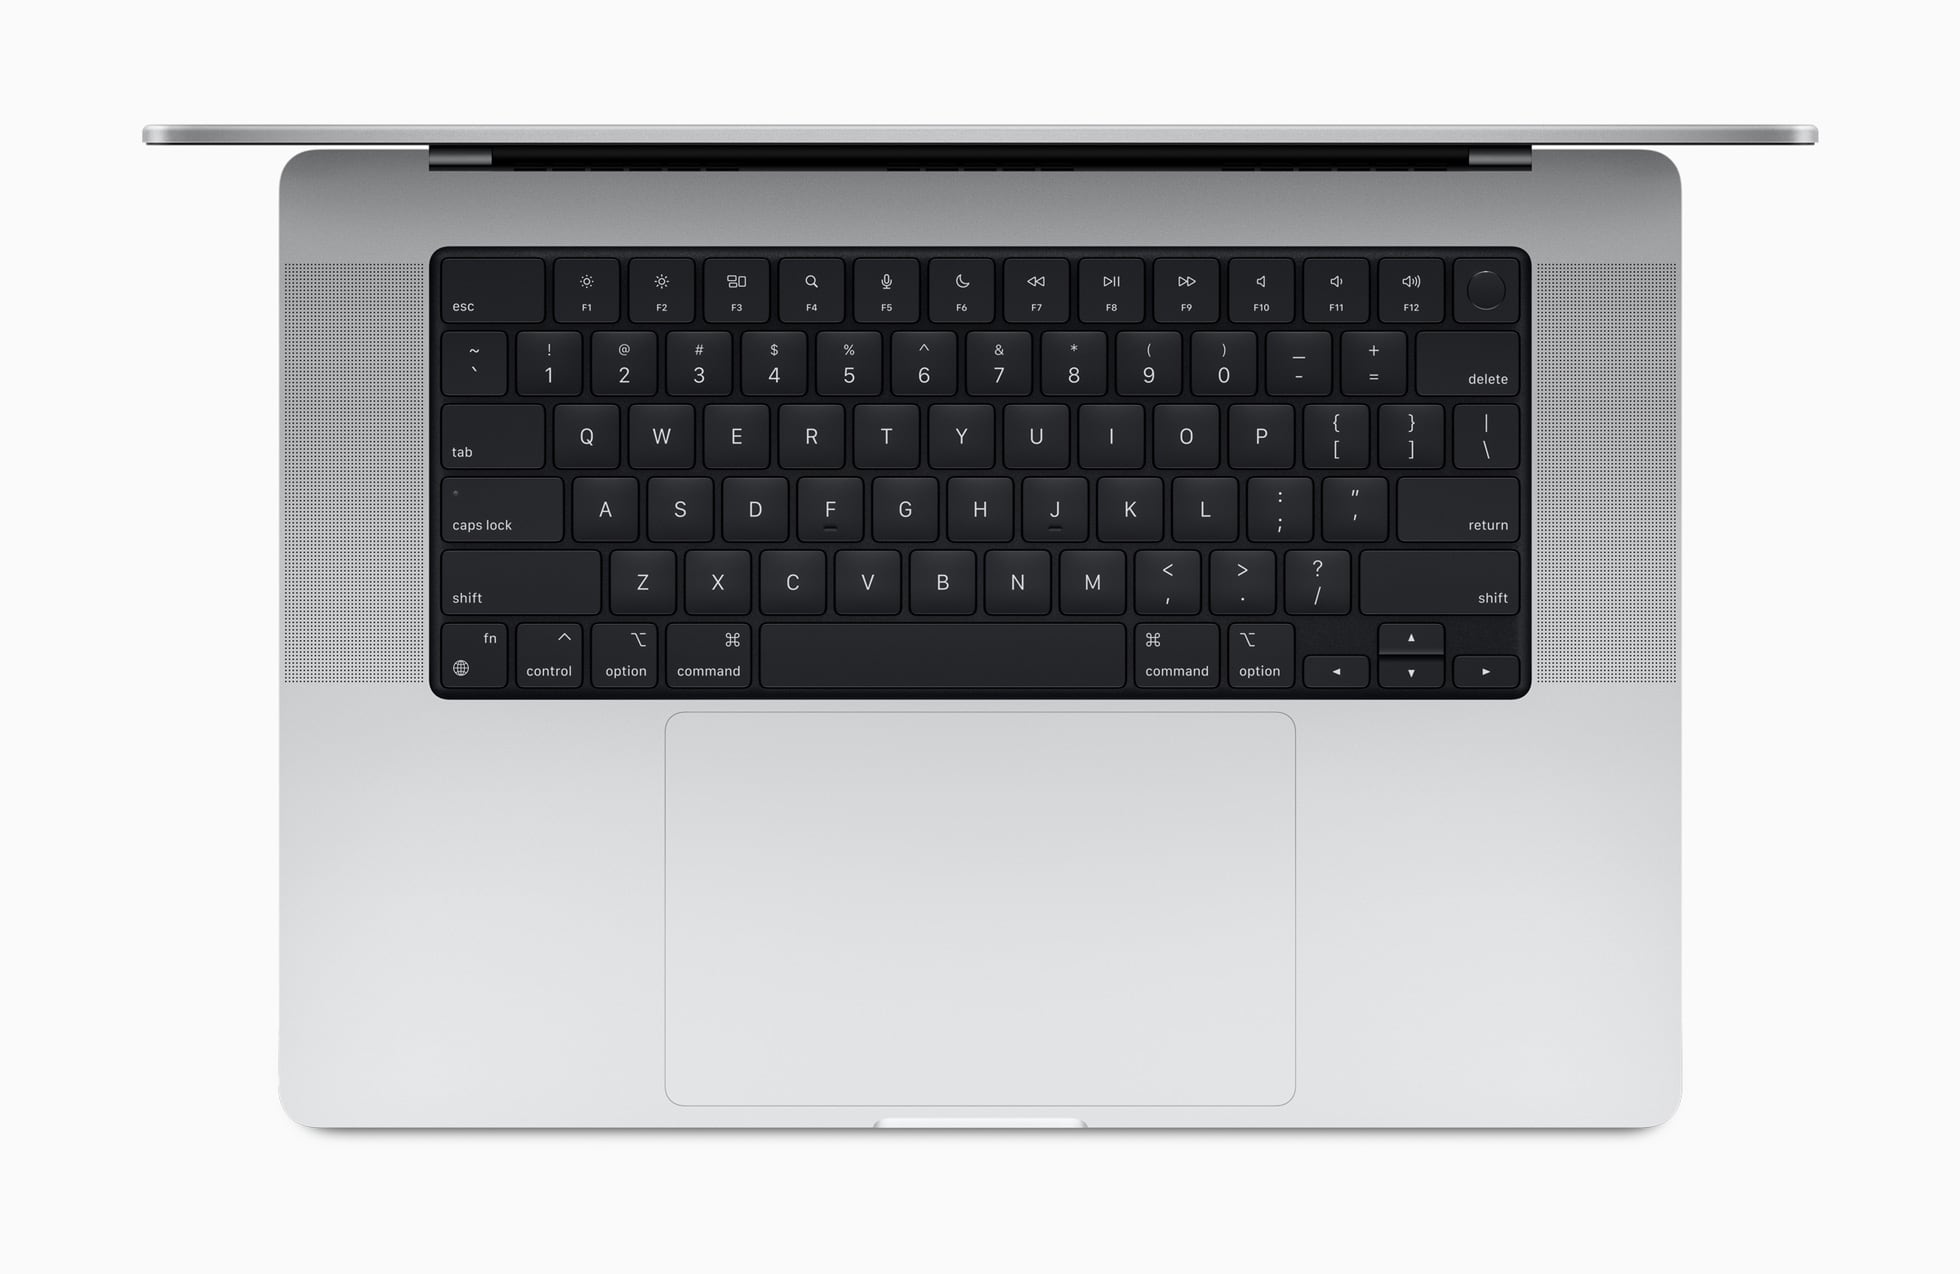 2021 M1 MacBook Pro keyboard layout